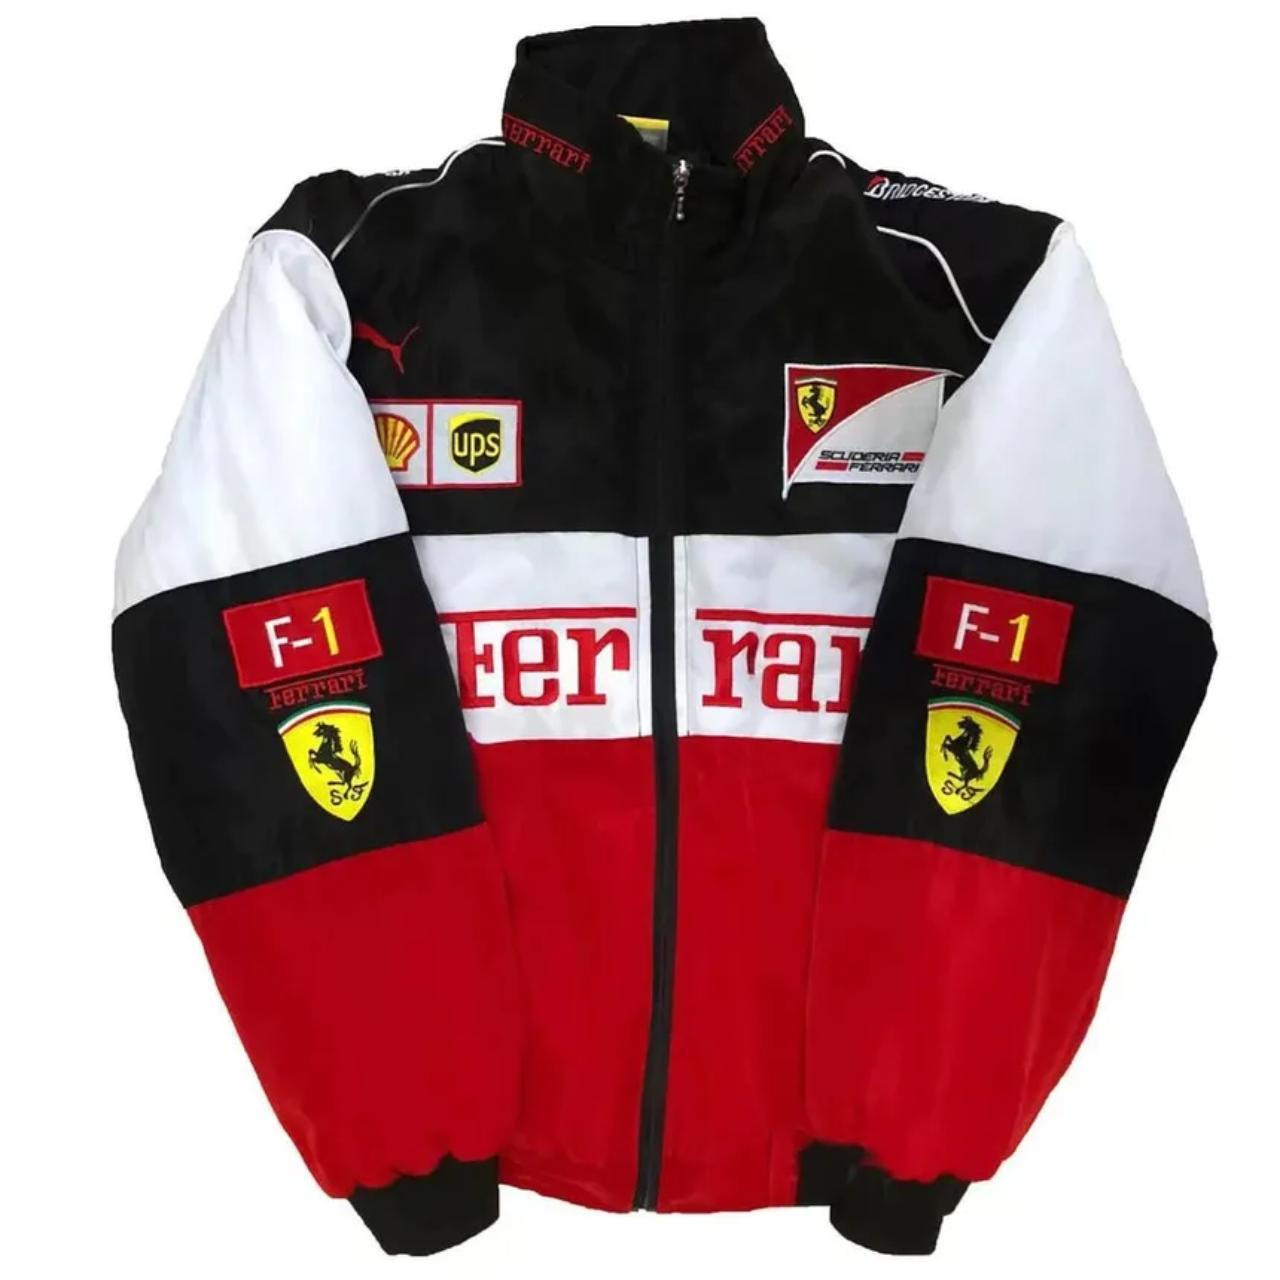 Ferrari Racing Bomber Jacket F1 - Depop